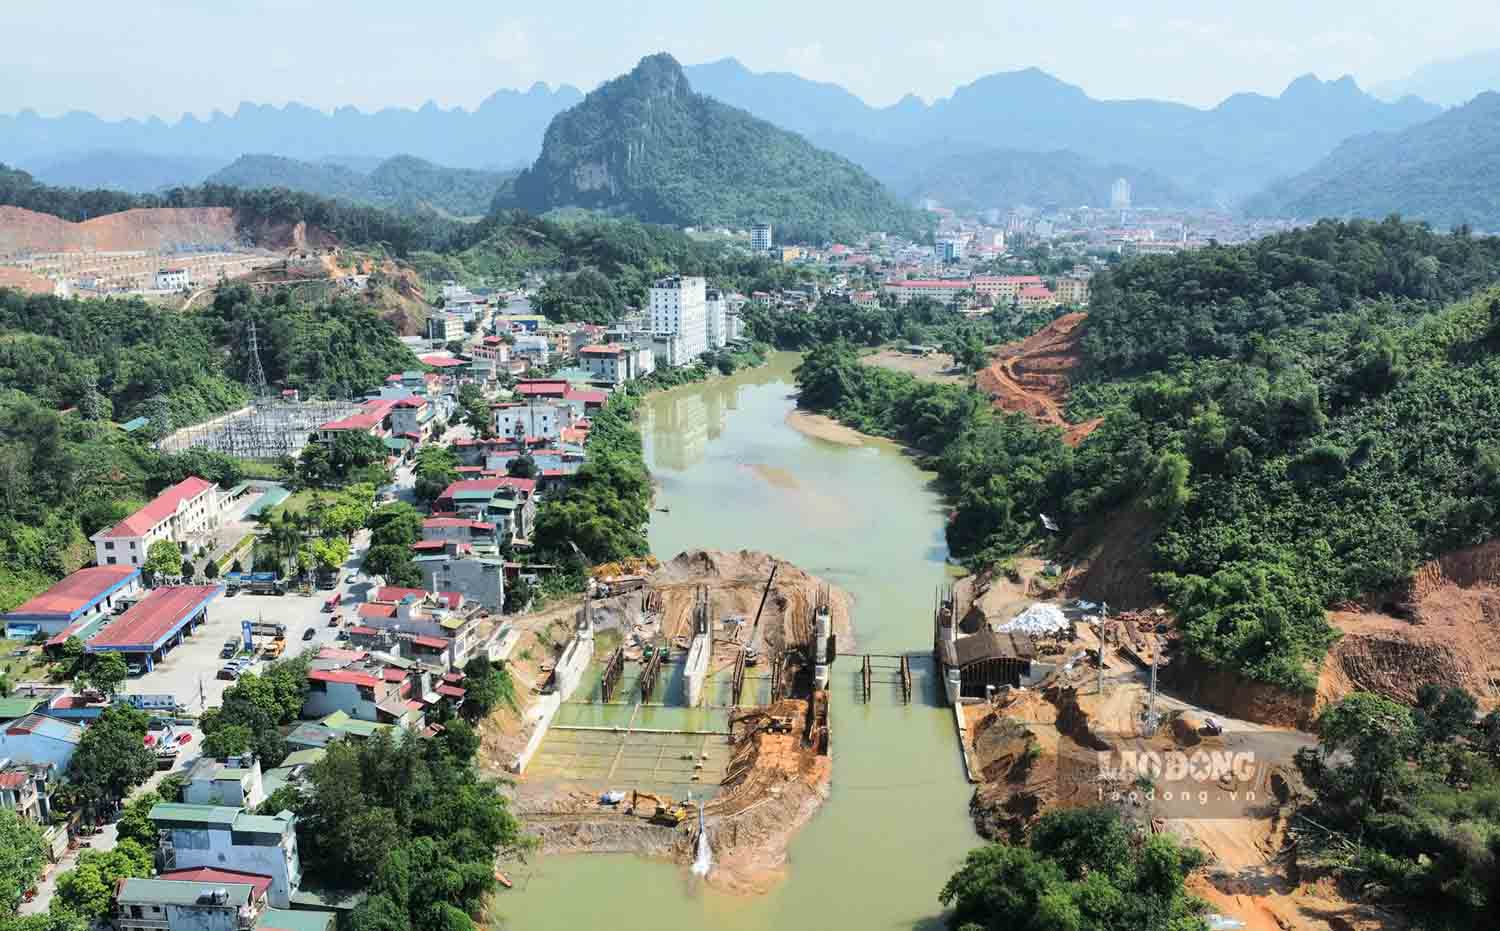 Tháng 2.2023, tỉnh Hà Giang khởi công dự án đập dâng nước trên sông Lô đoạn qua TP Hà Giang với tổng mức đầu tư hơn 330 tỉ đồng. Công trình sau khi hoàn thành sẽ tạo lòng hồ với diện tích mặt hồ gần 54 ha, dung tích 2,2 triệu m3 giúp tạo cảnh quan, điều hòa khí hậu.